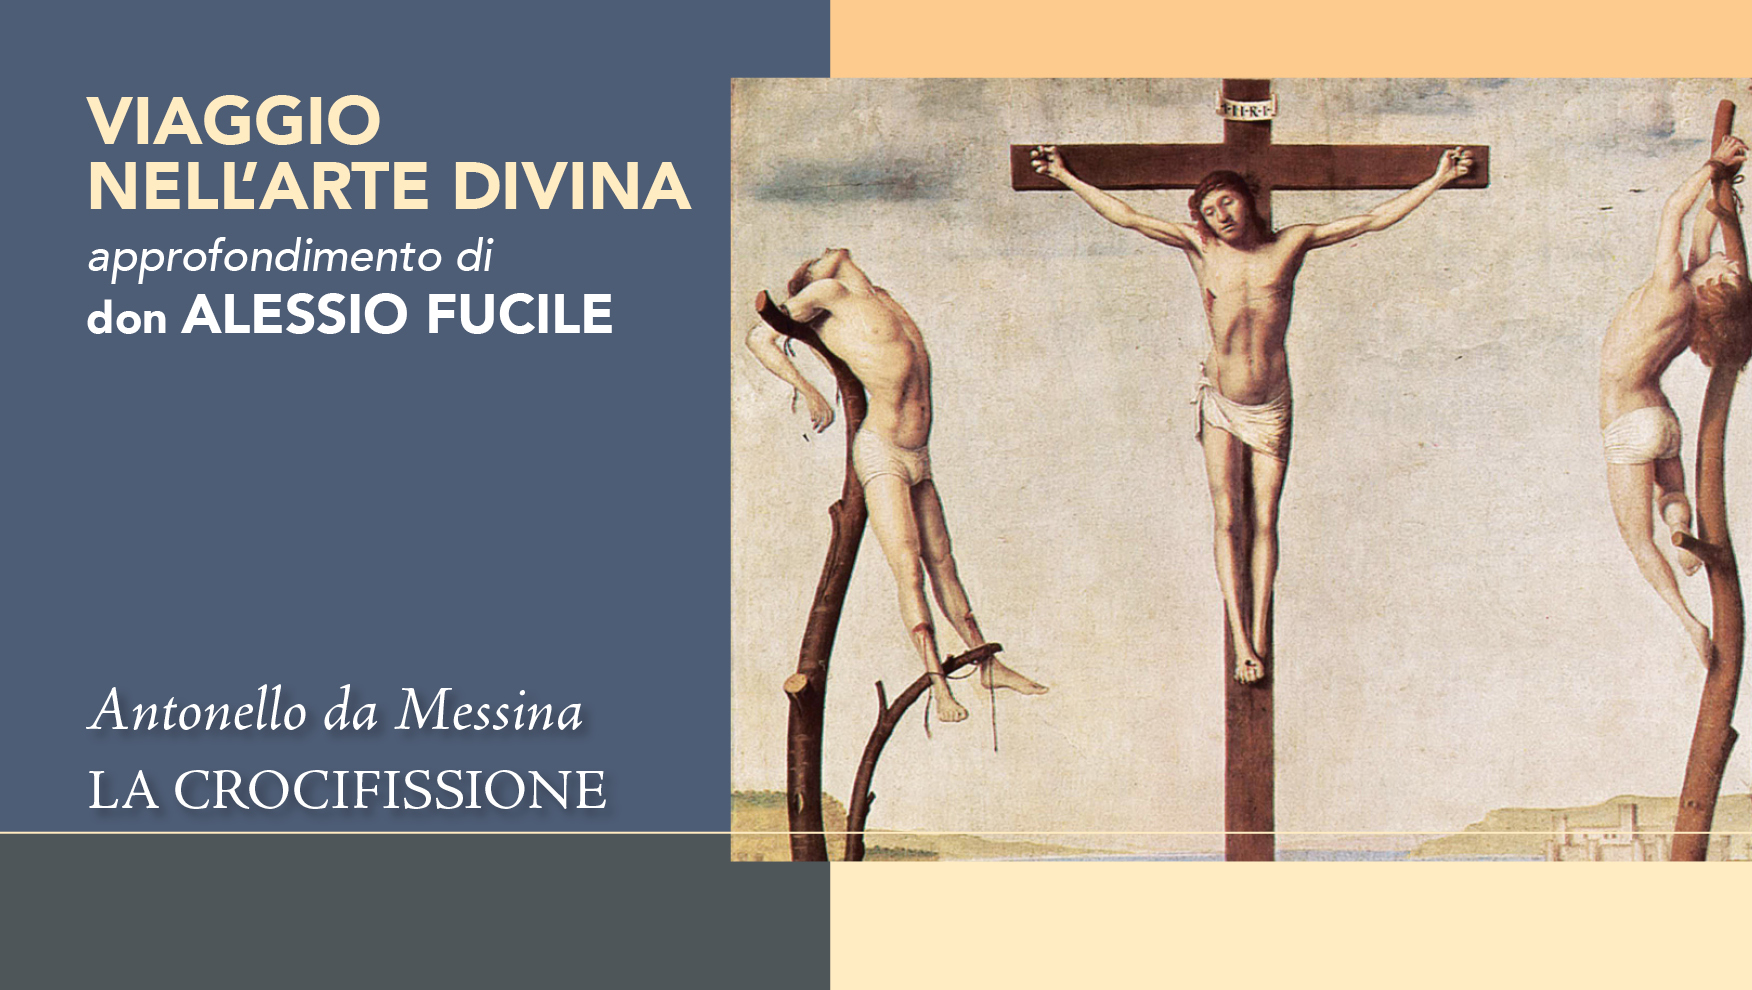 La Crocifissione di Antonello da Messina: un capolavoro di devozione e arte